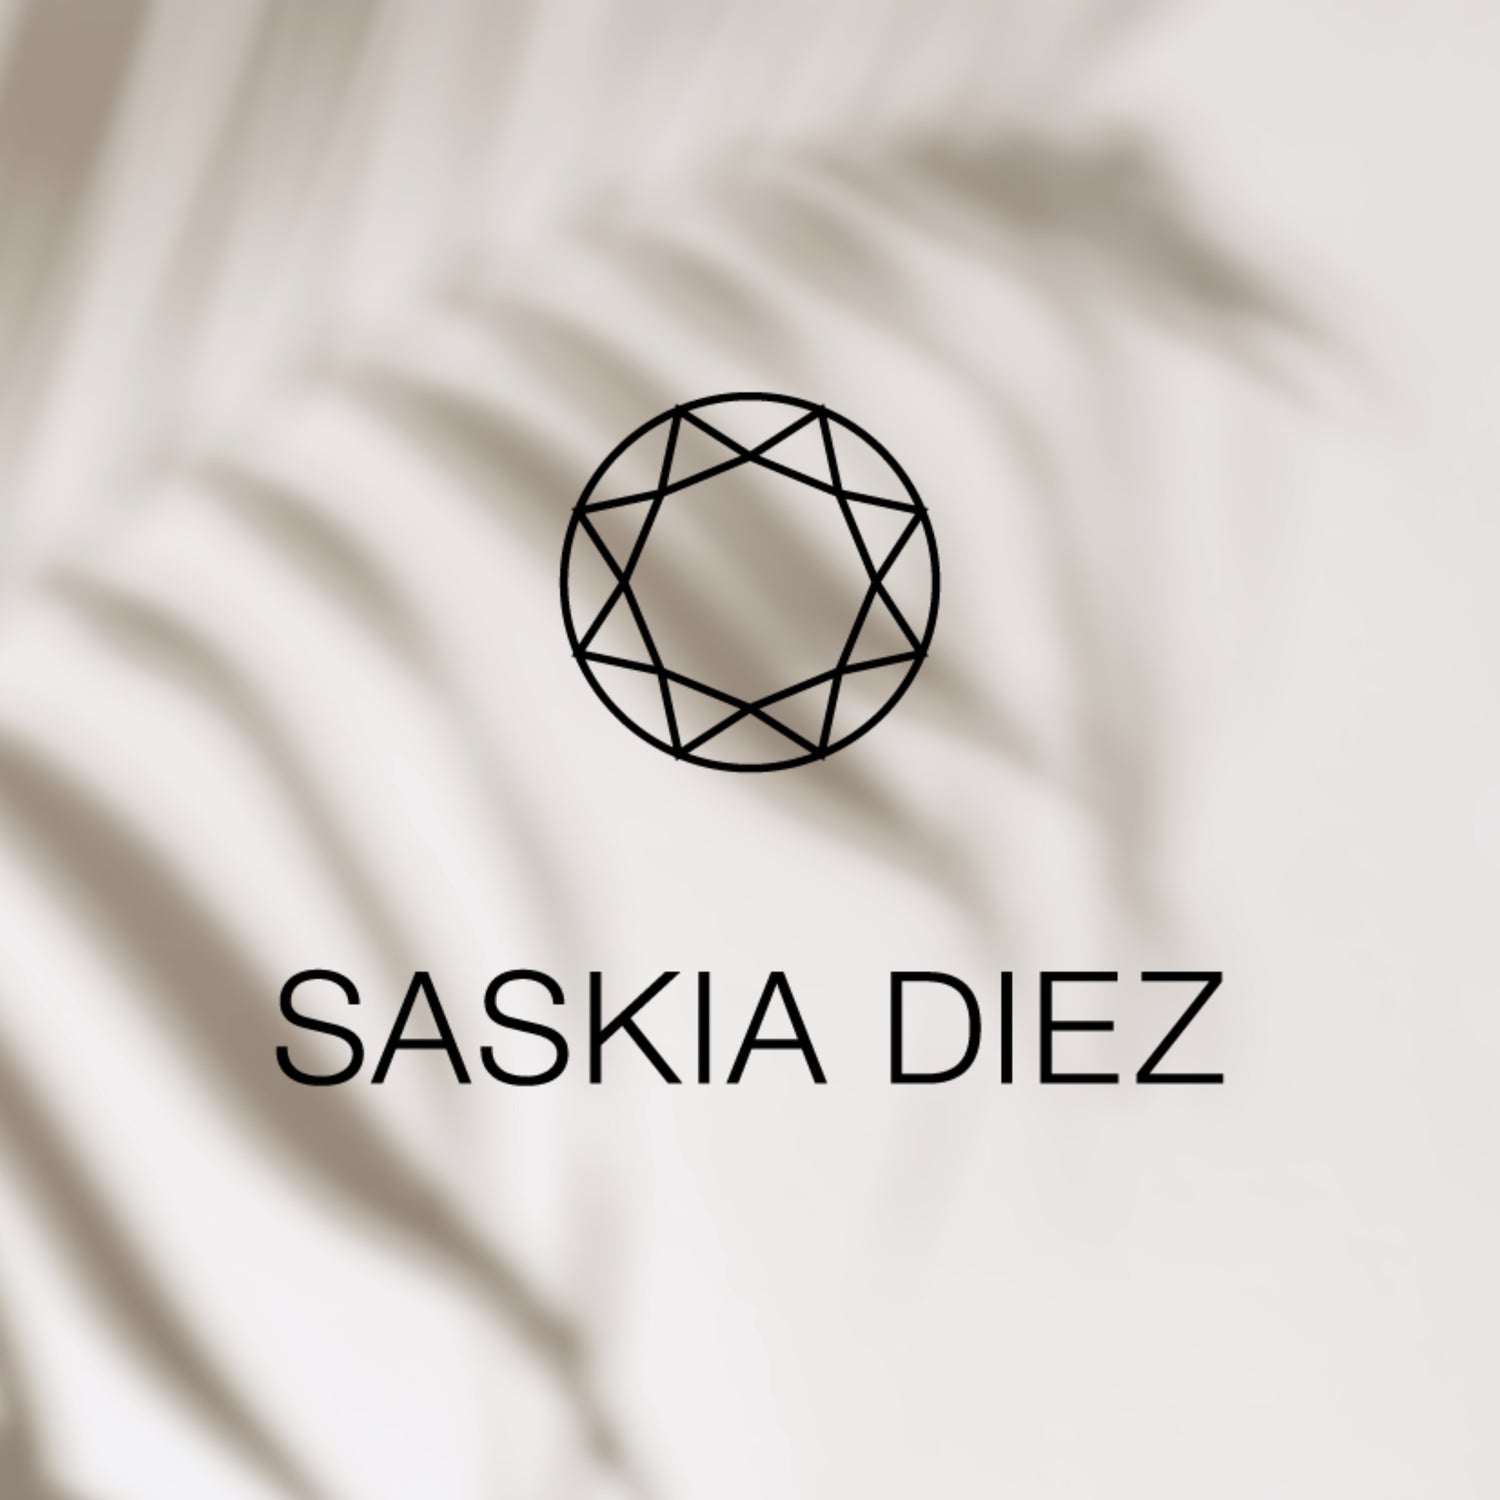 Saskia Diez